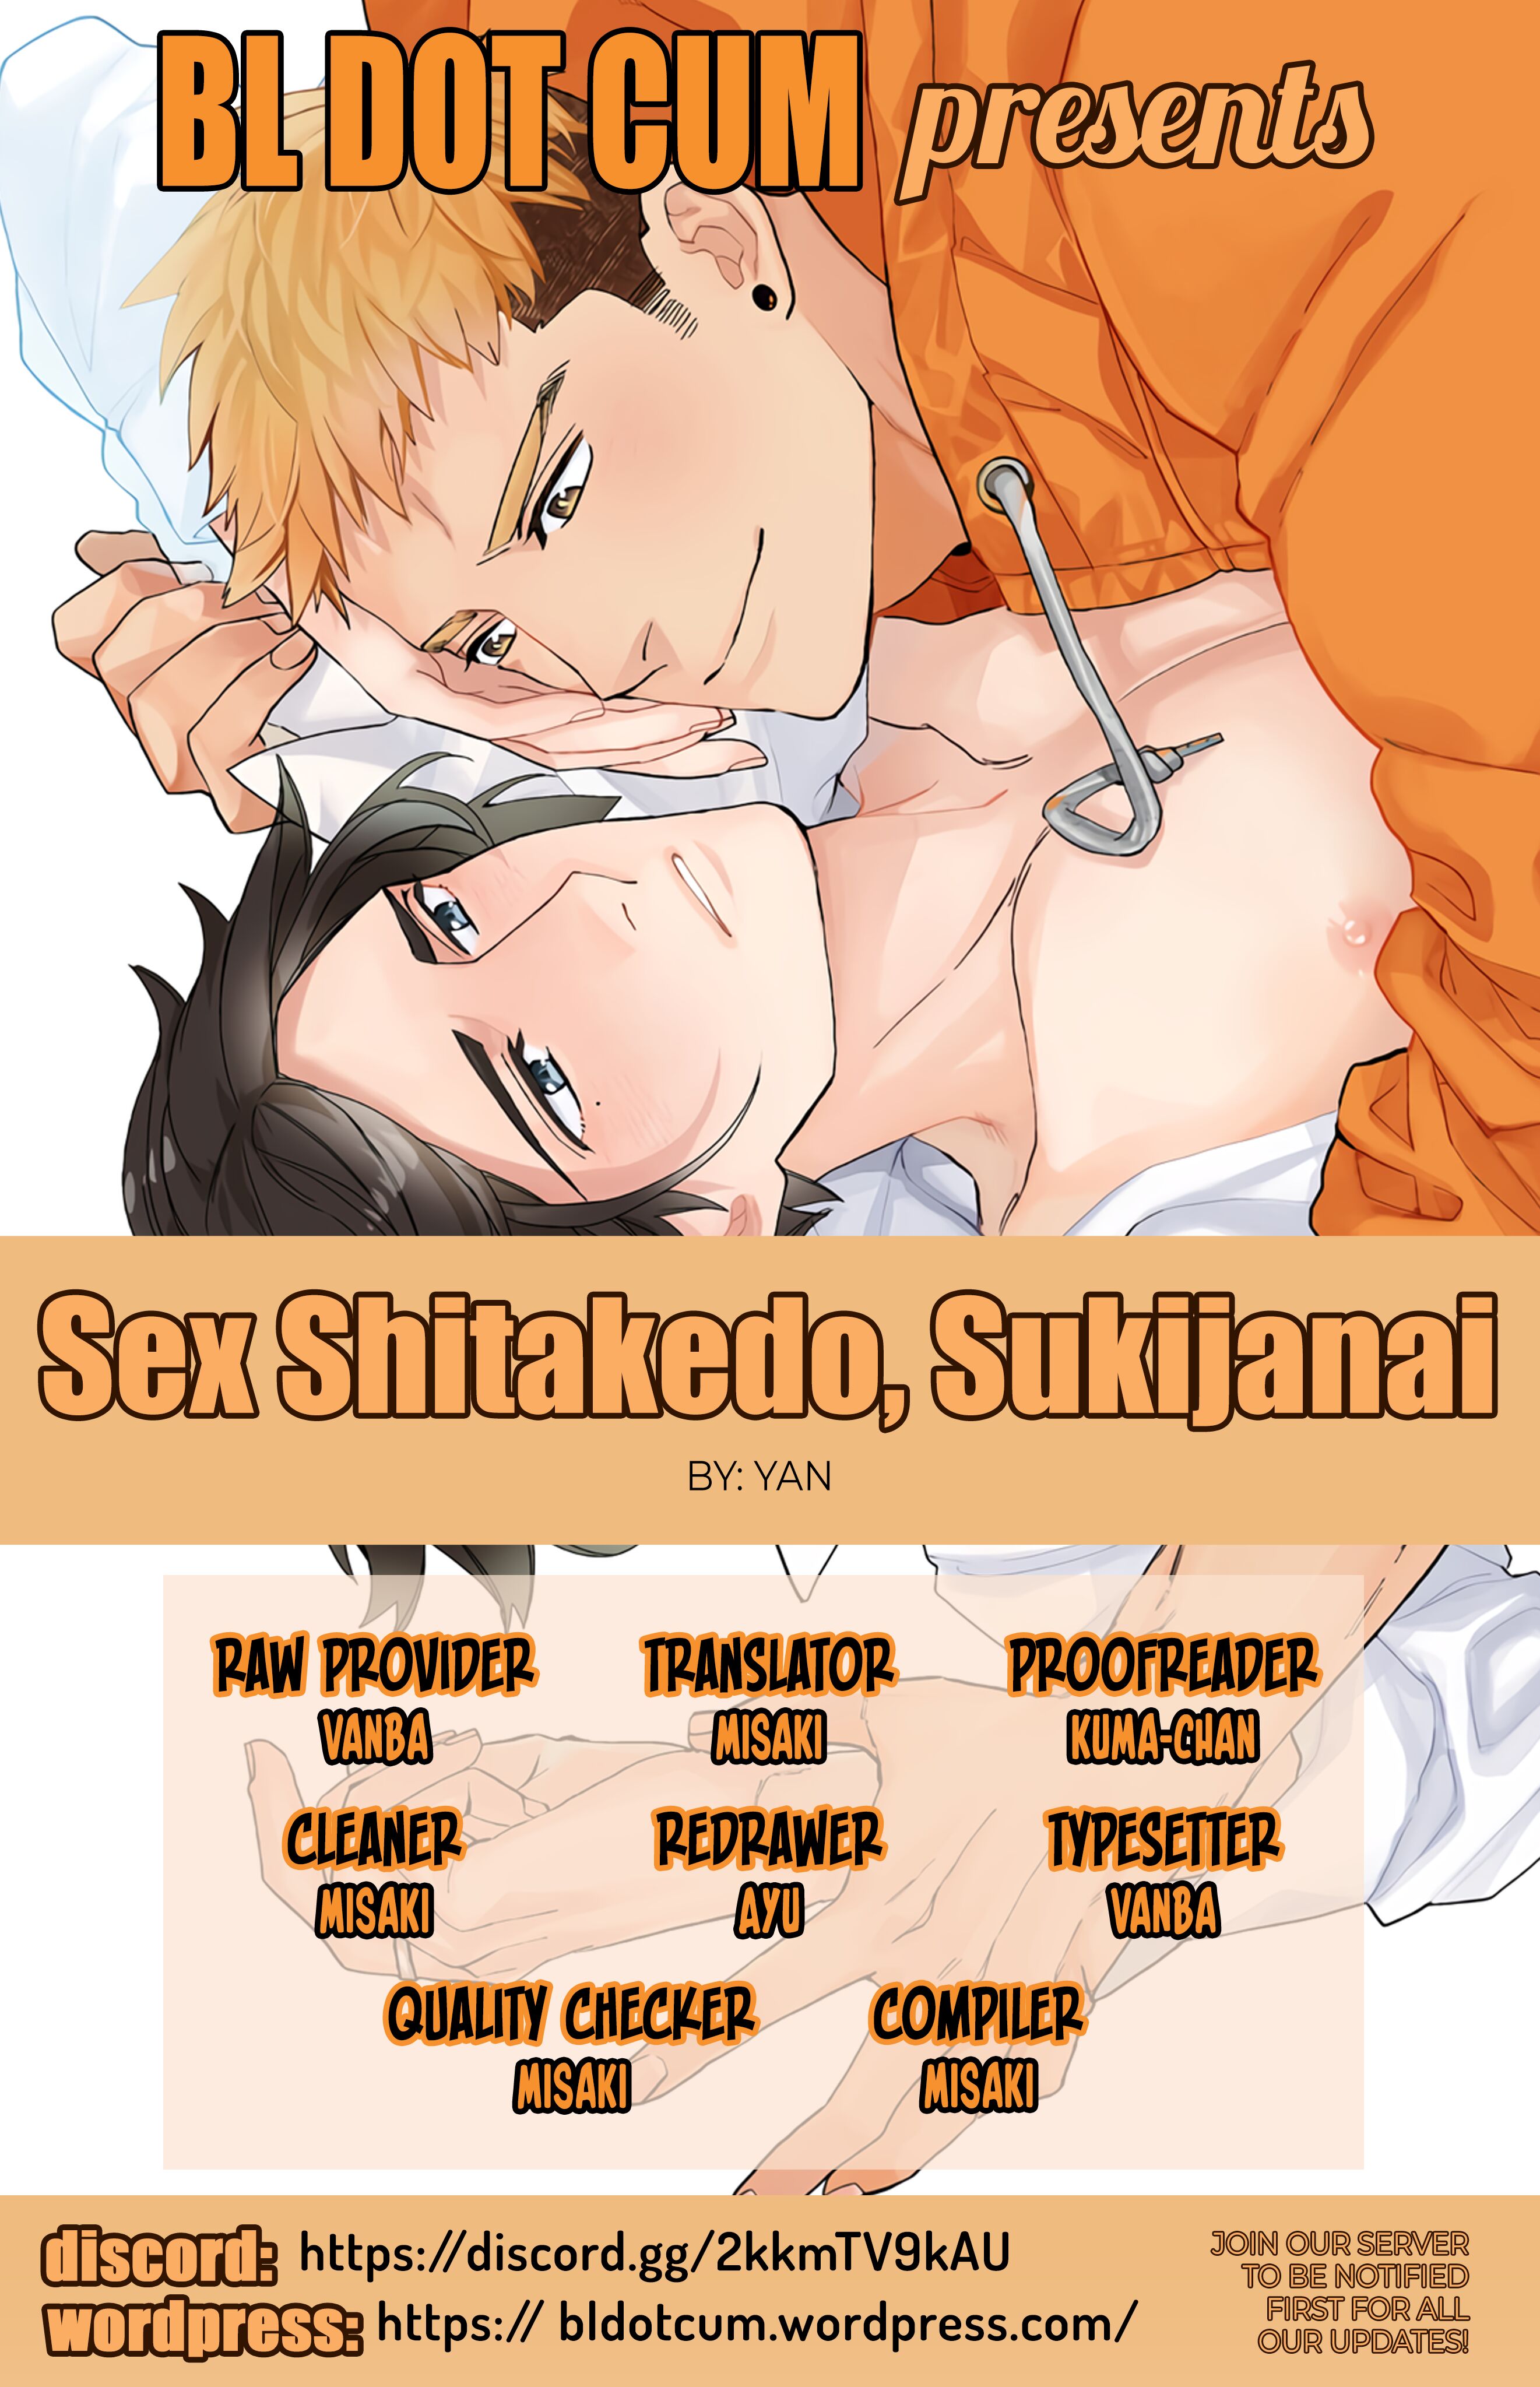 Sex Shitakedo, Sukijanai Chapter 1 - HolyManga.net